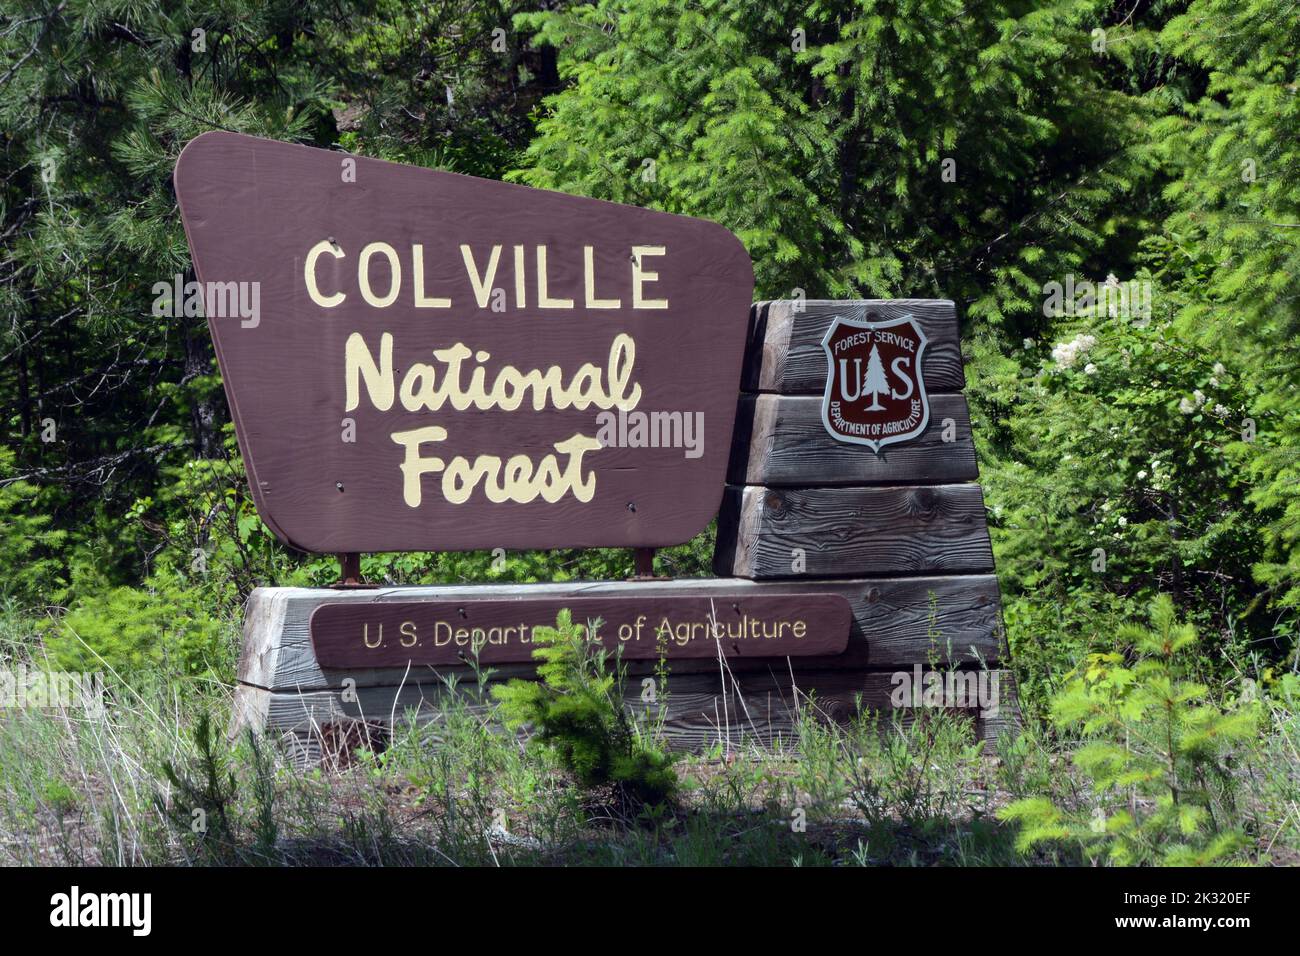 Un cartello stradale per la Colville National Forest, nelle Selkirk Mountains, vicino a Metaline Falls, nel nord-est dello stato di Washington, Stati Uniti. Foto Stock